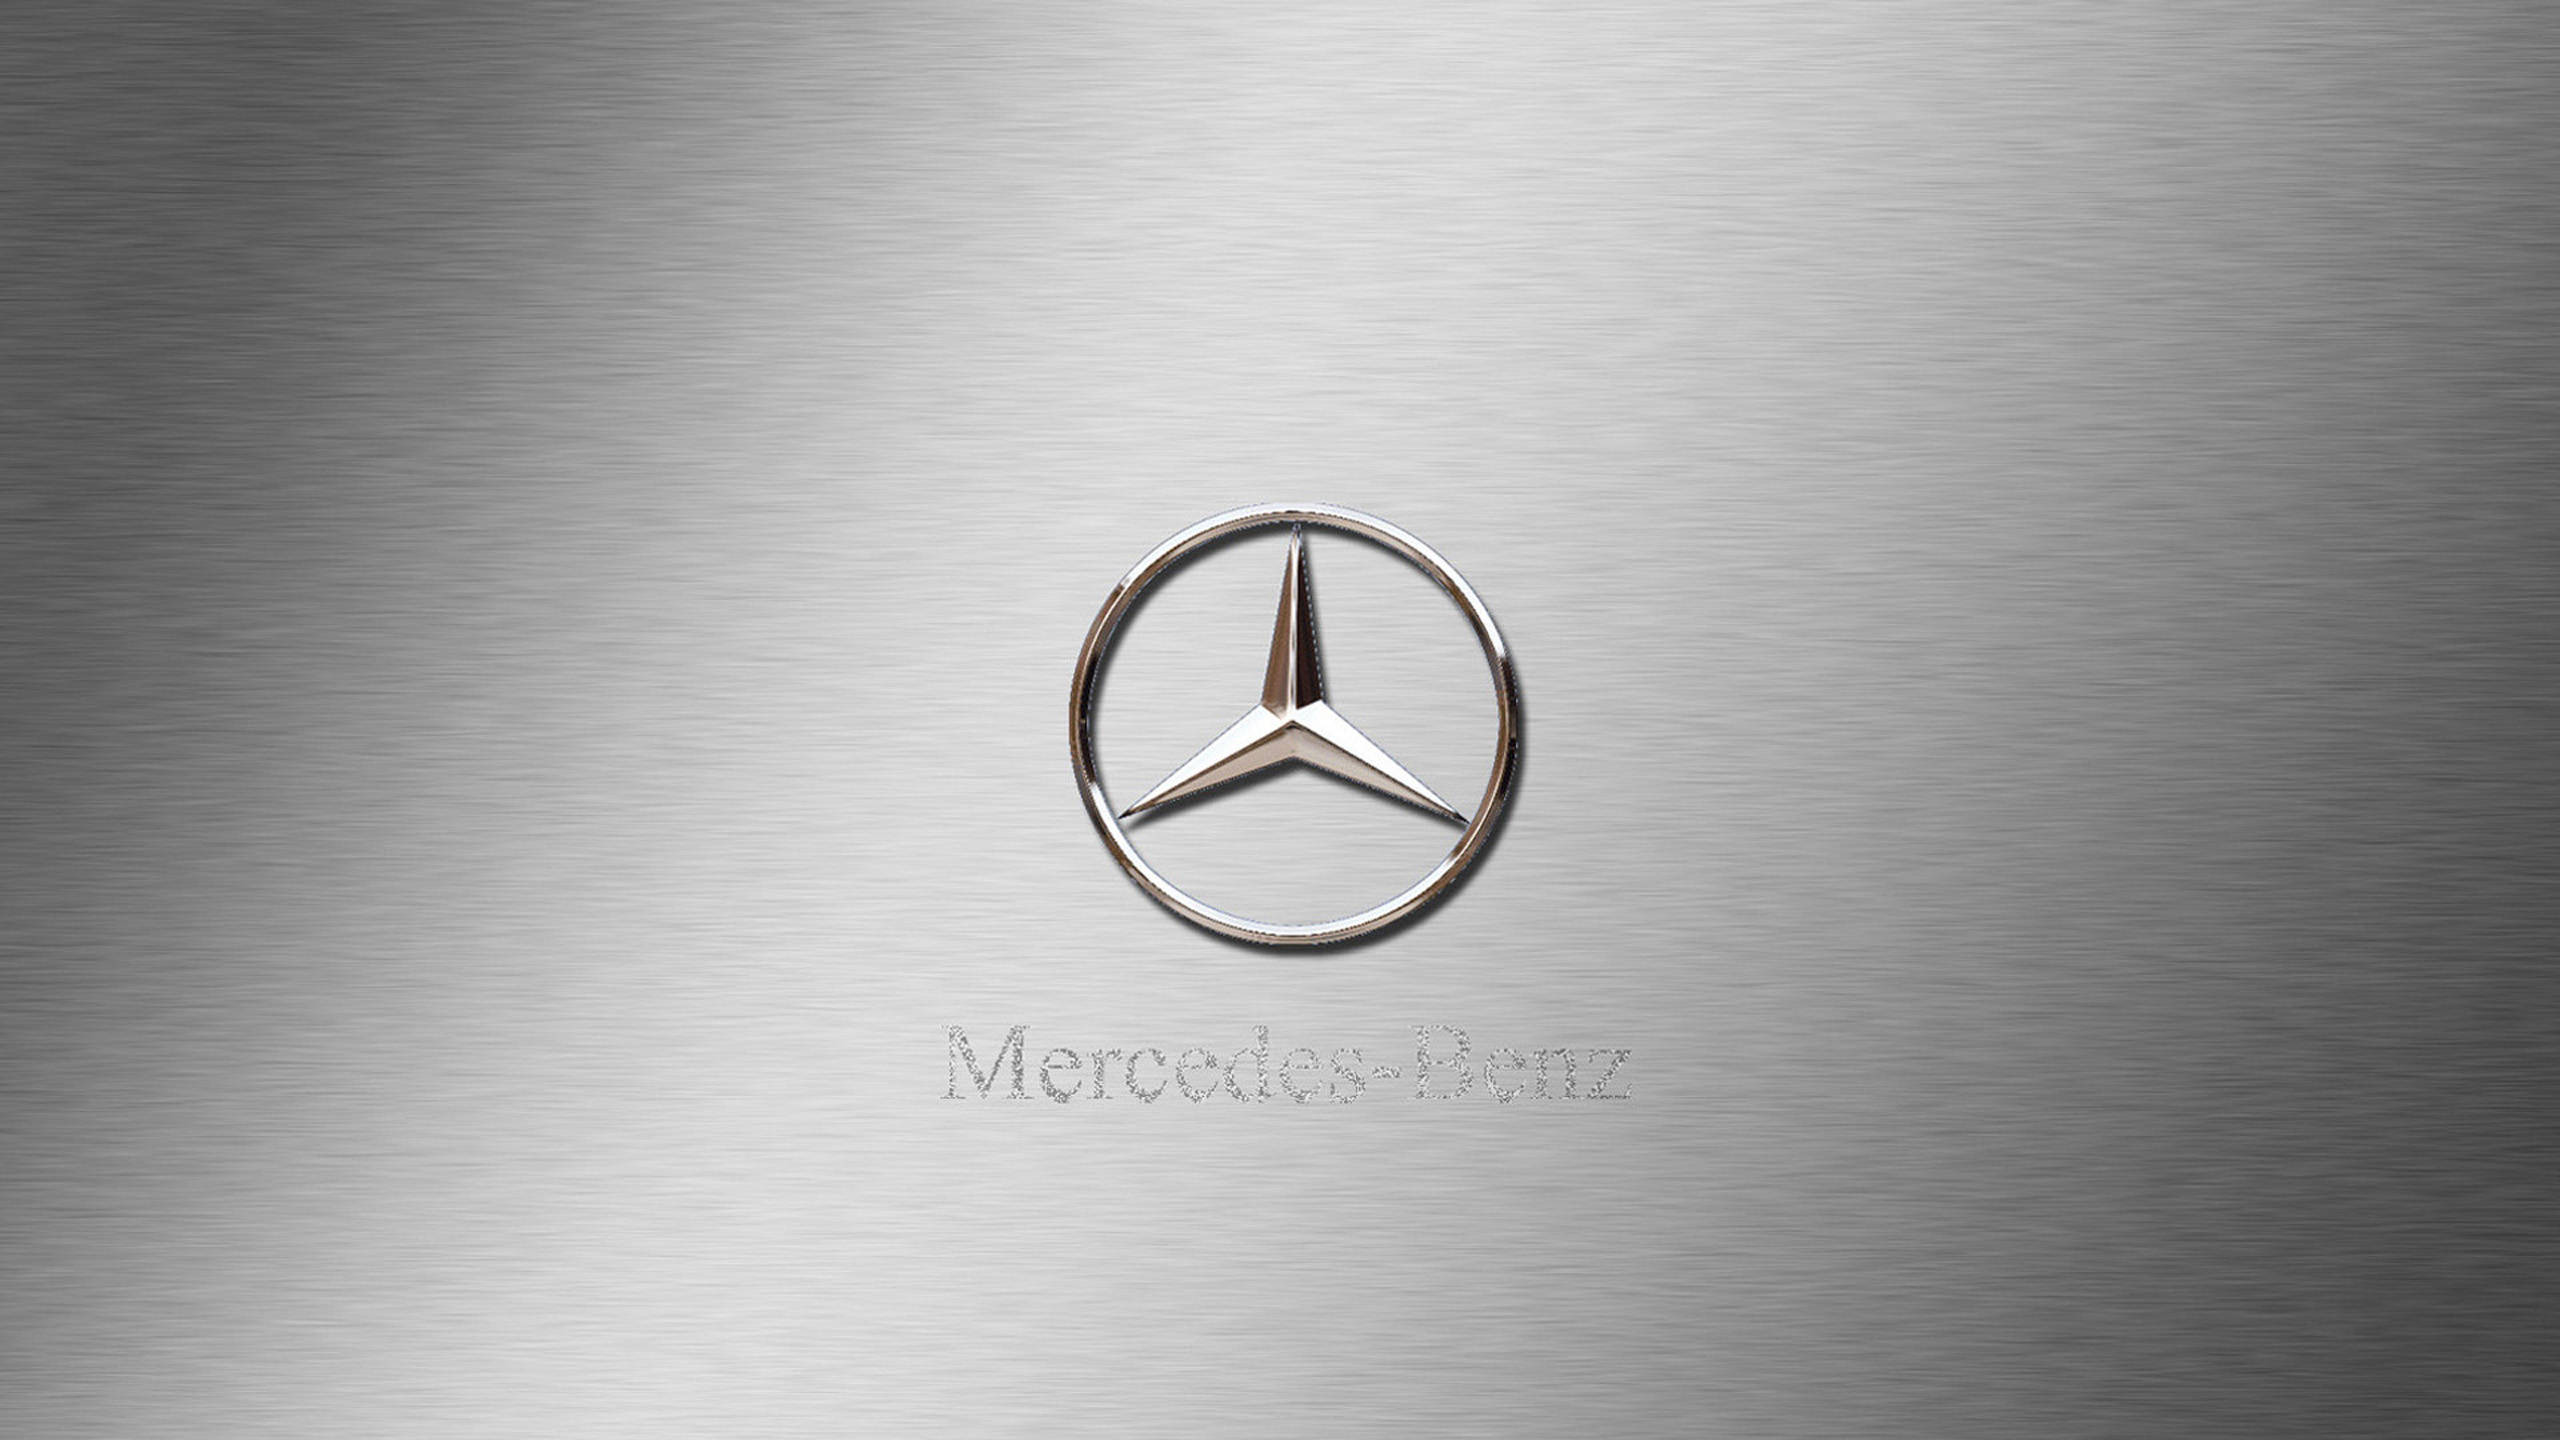 Daimler Ag, Mercedes-Benz SLR McLaren, Logotipo, Circulo, Gráficos. Wallpaper in 2560x1440 Resolution